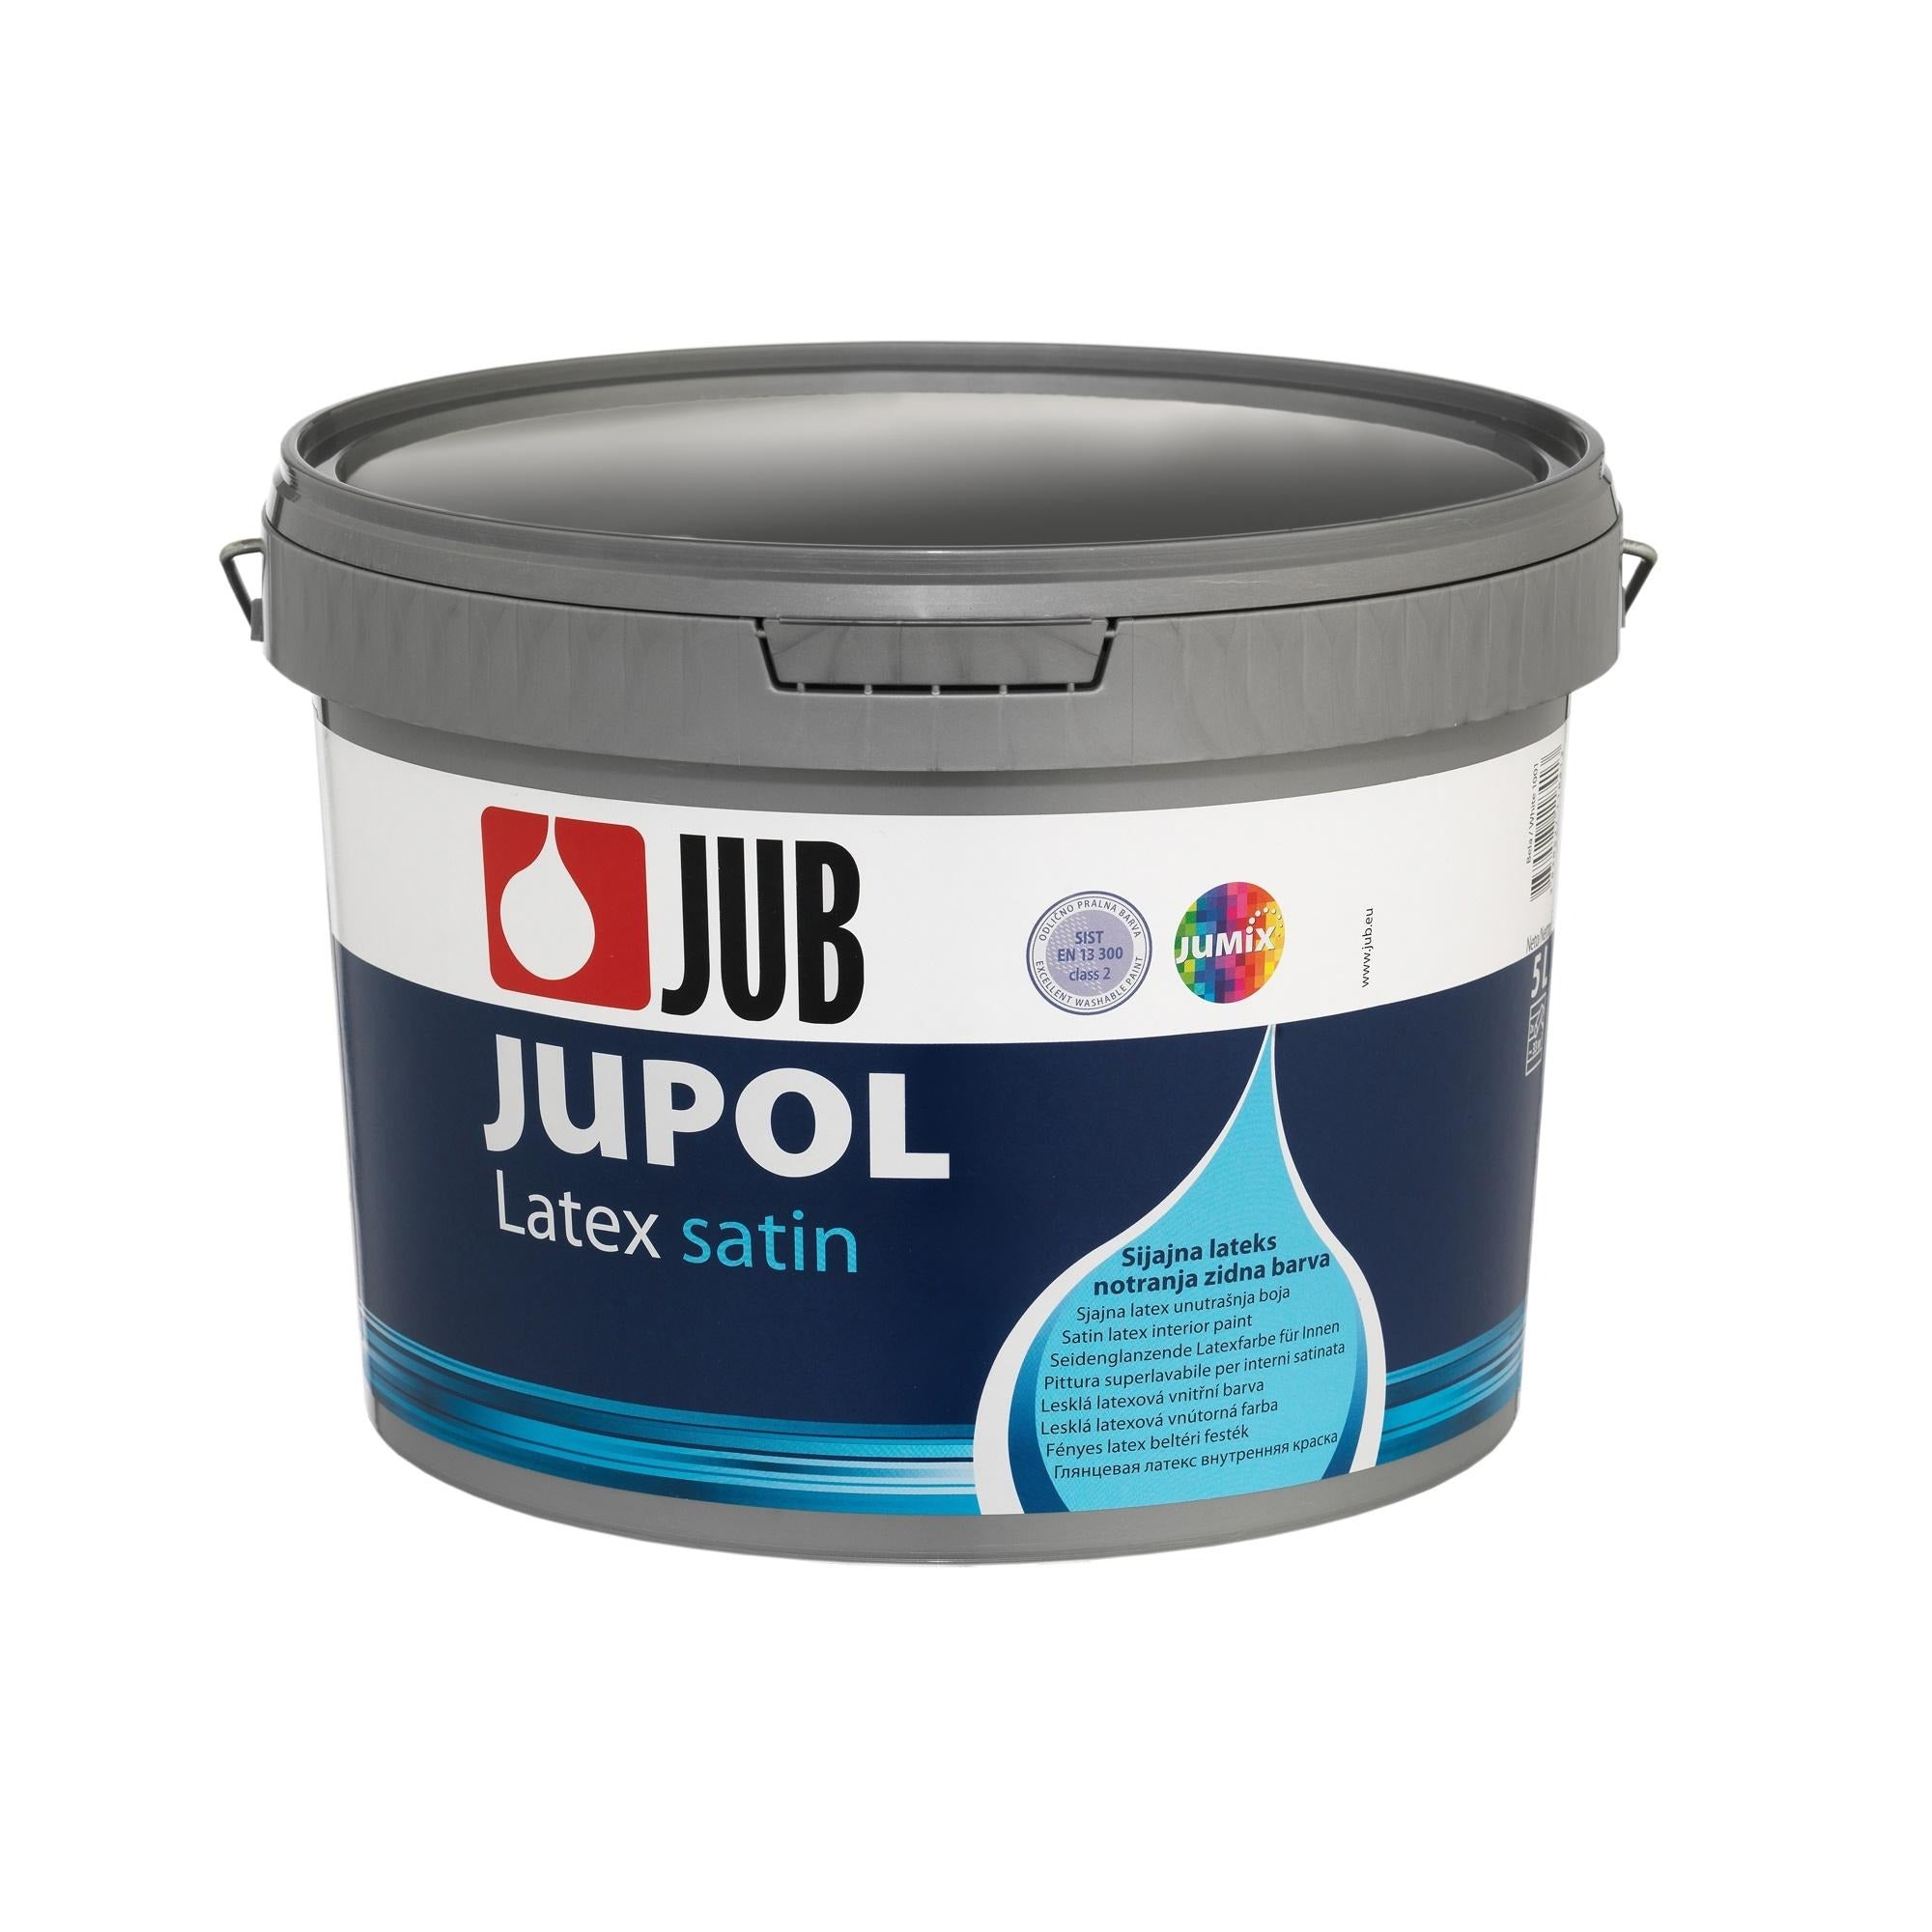 JUB JUPOL Latex satin omyvatelná vnitřní malířská barva 5 l